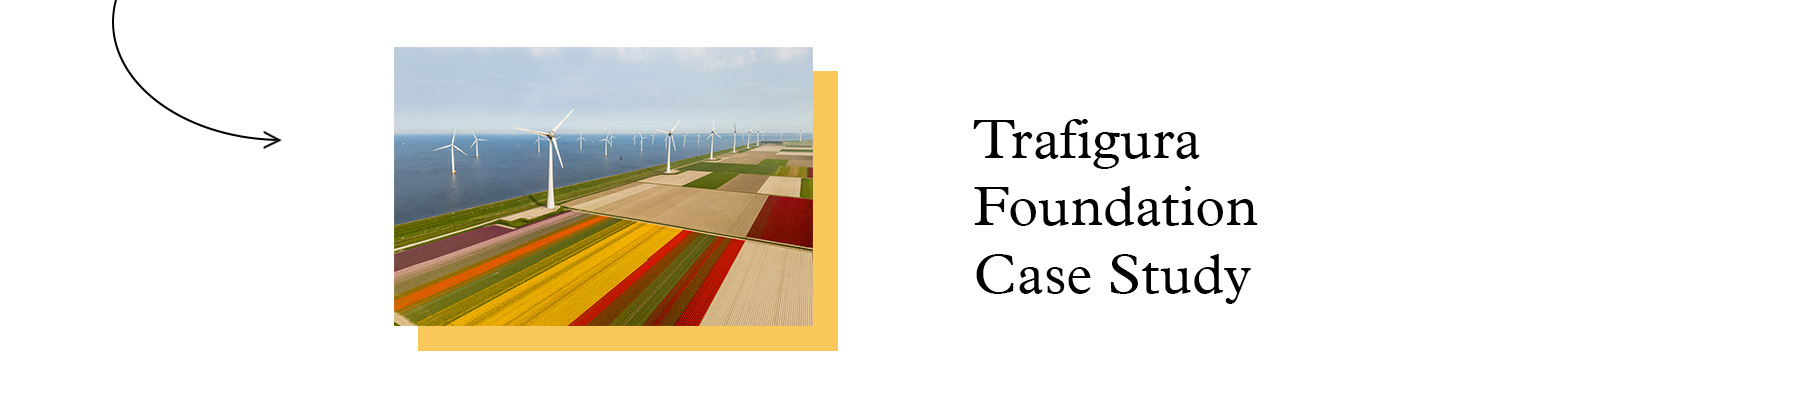 Strategic Alignment Case Study - Trafigura Foundation